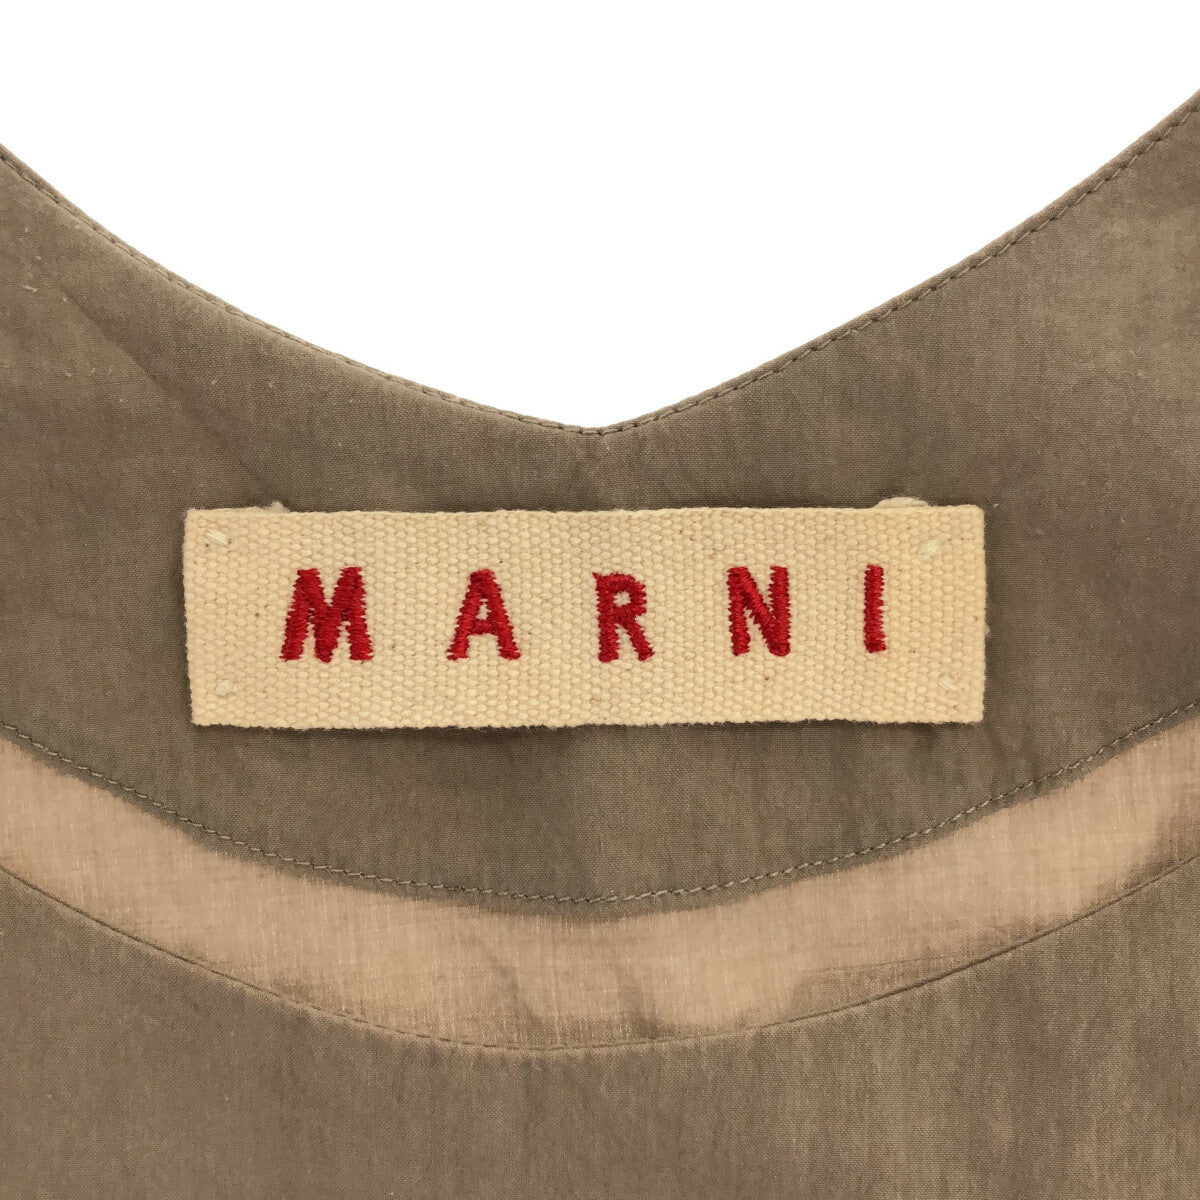 MARNI / マルニ | バイカラー ノースリーブワンピース | 40 | グレー/ミントグリーン | レディース